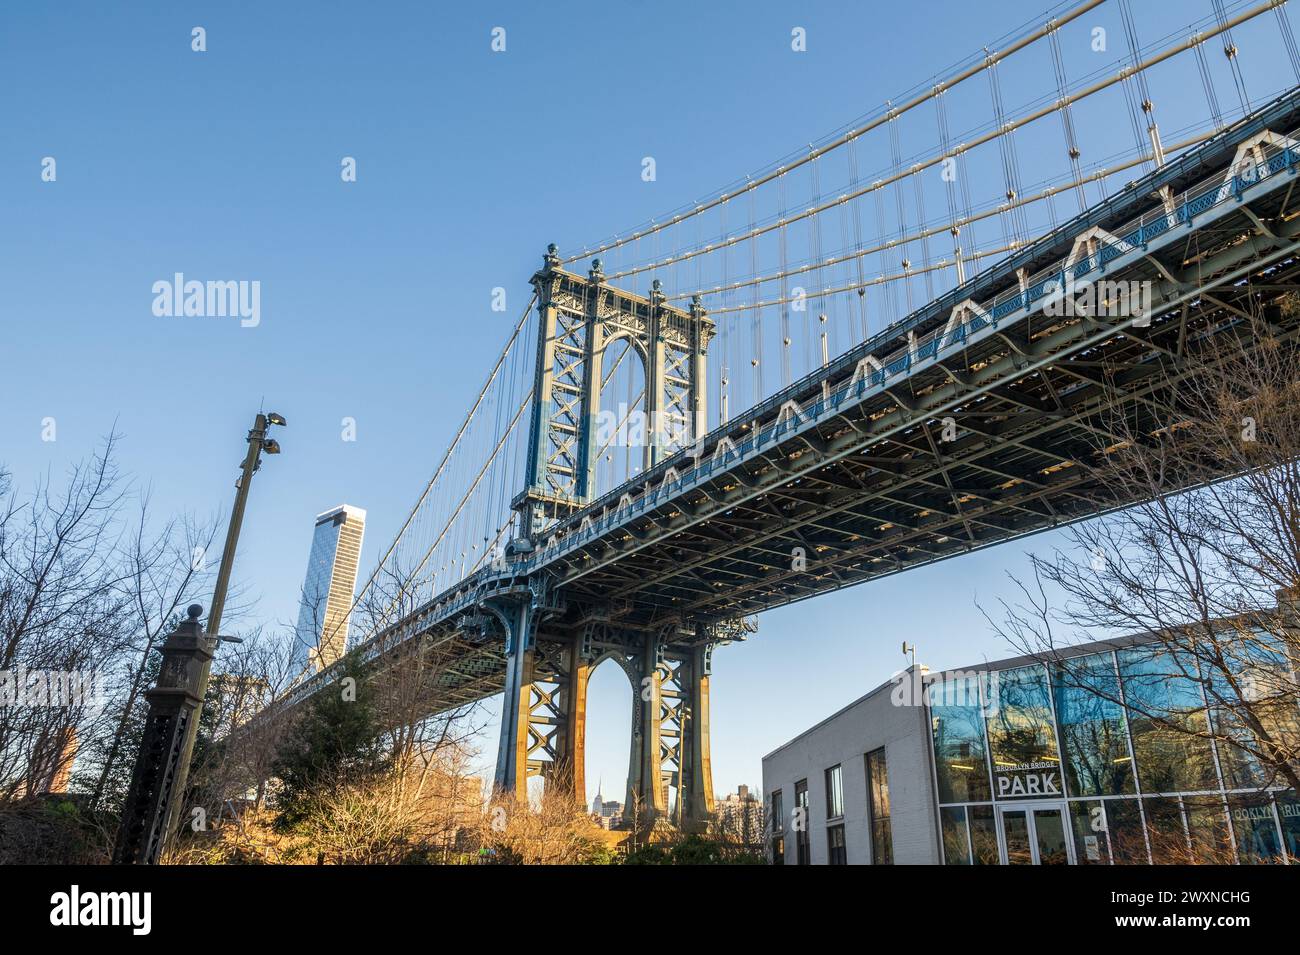 Dumbo ist ein Stadtteil im New York City Borough of Brooklyn. Es umfasst zwei Abschnitte: Einen zwischen den Manhattan und Brooklyn Bridges, Stockfoto